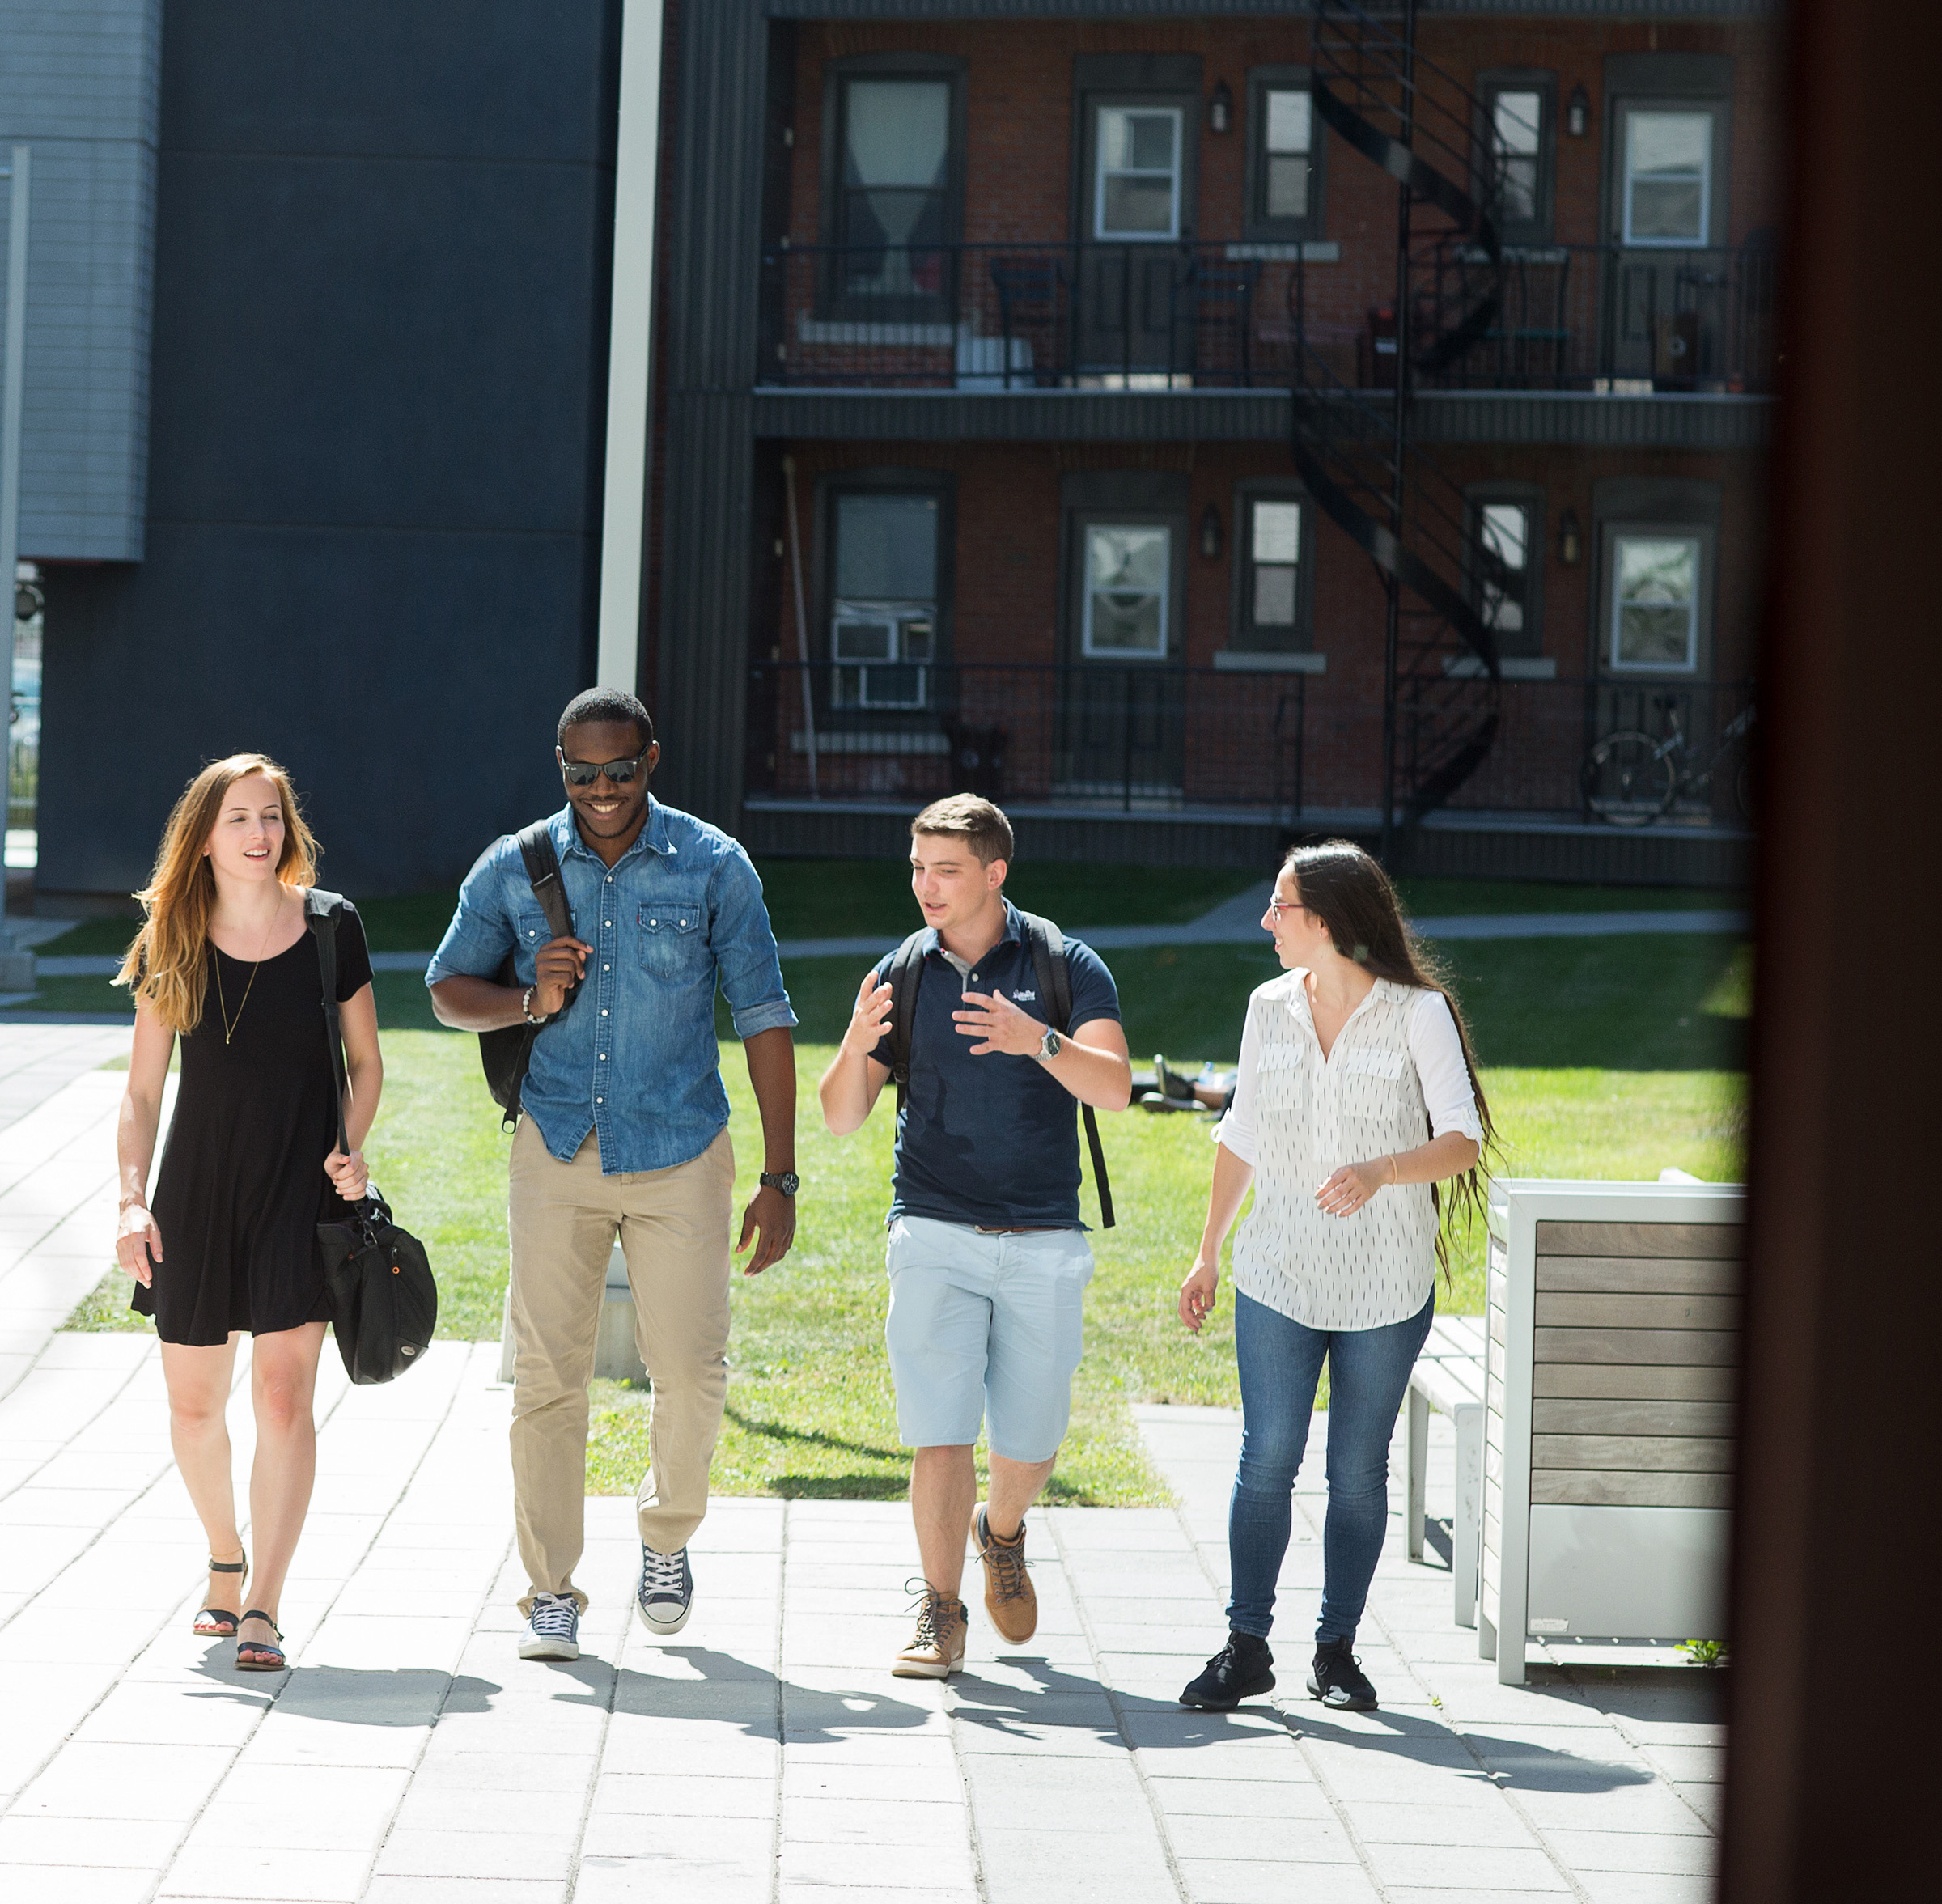 Étudiants souriants se promenant sur le campus universitaire par beau temps.